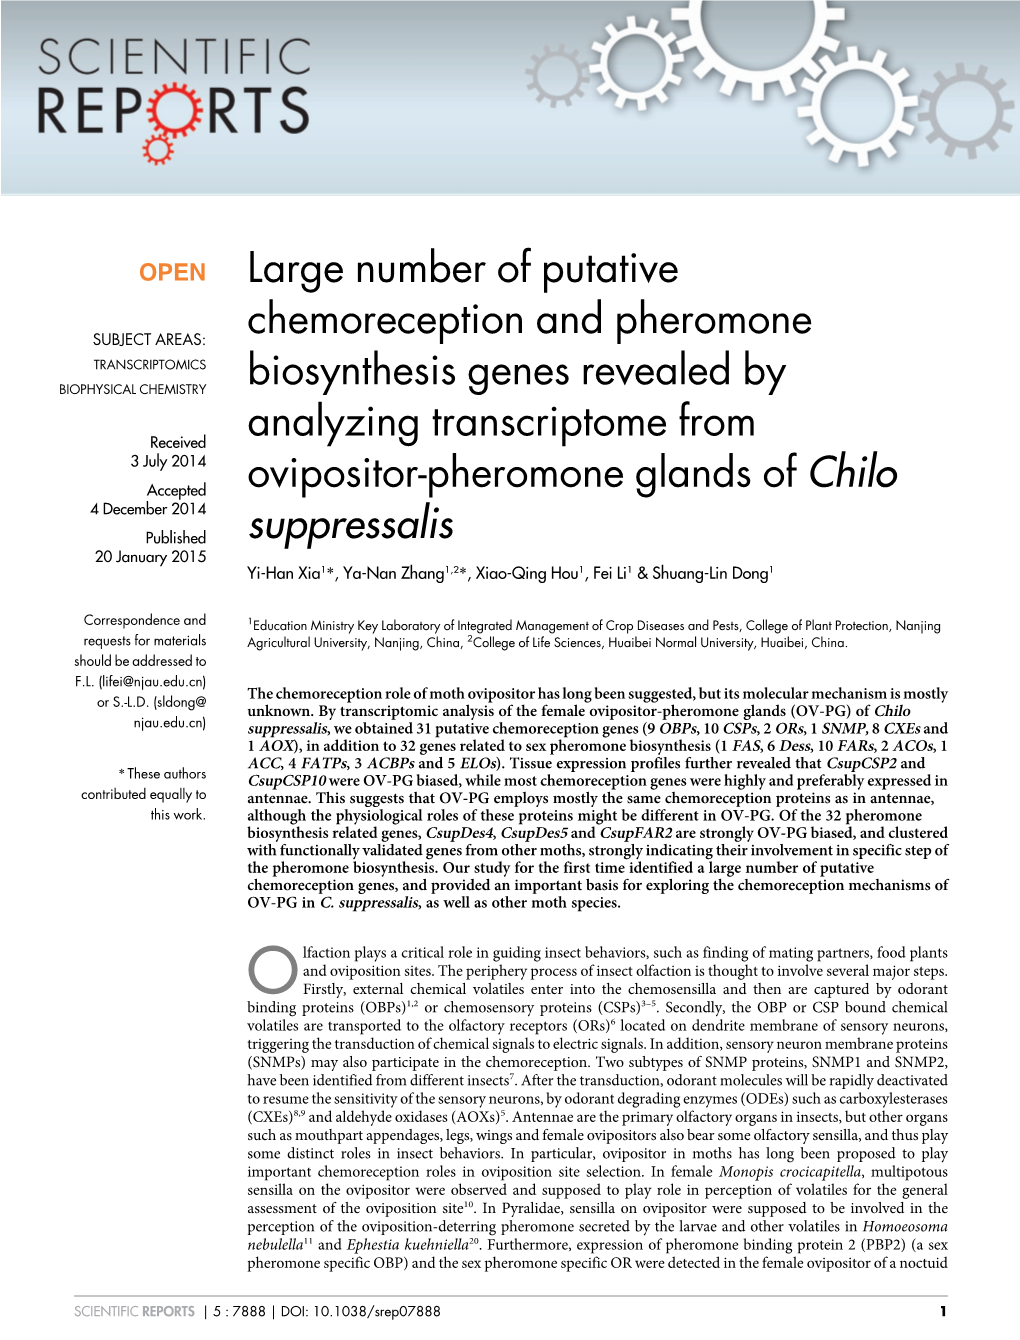 Large Number of Putative Chemoreception and Pheromone